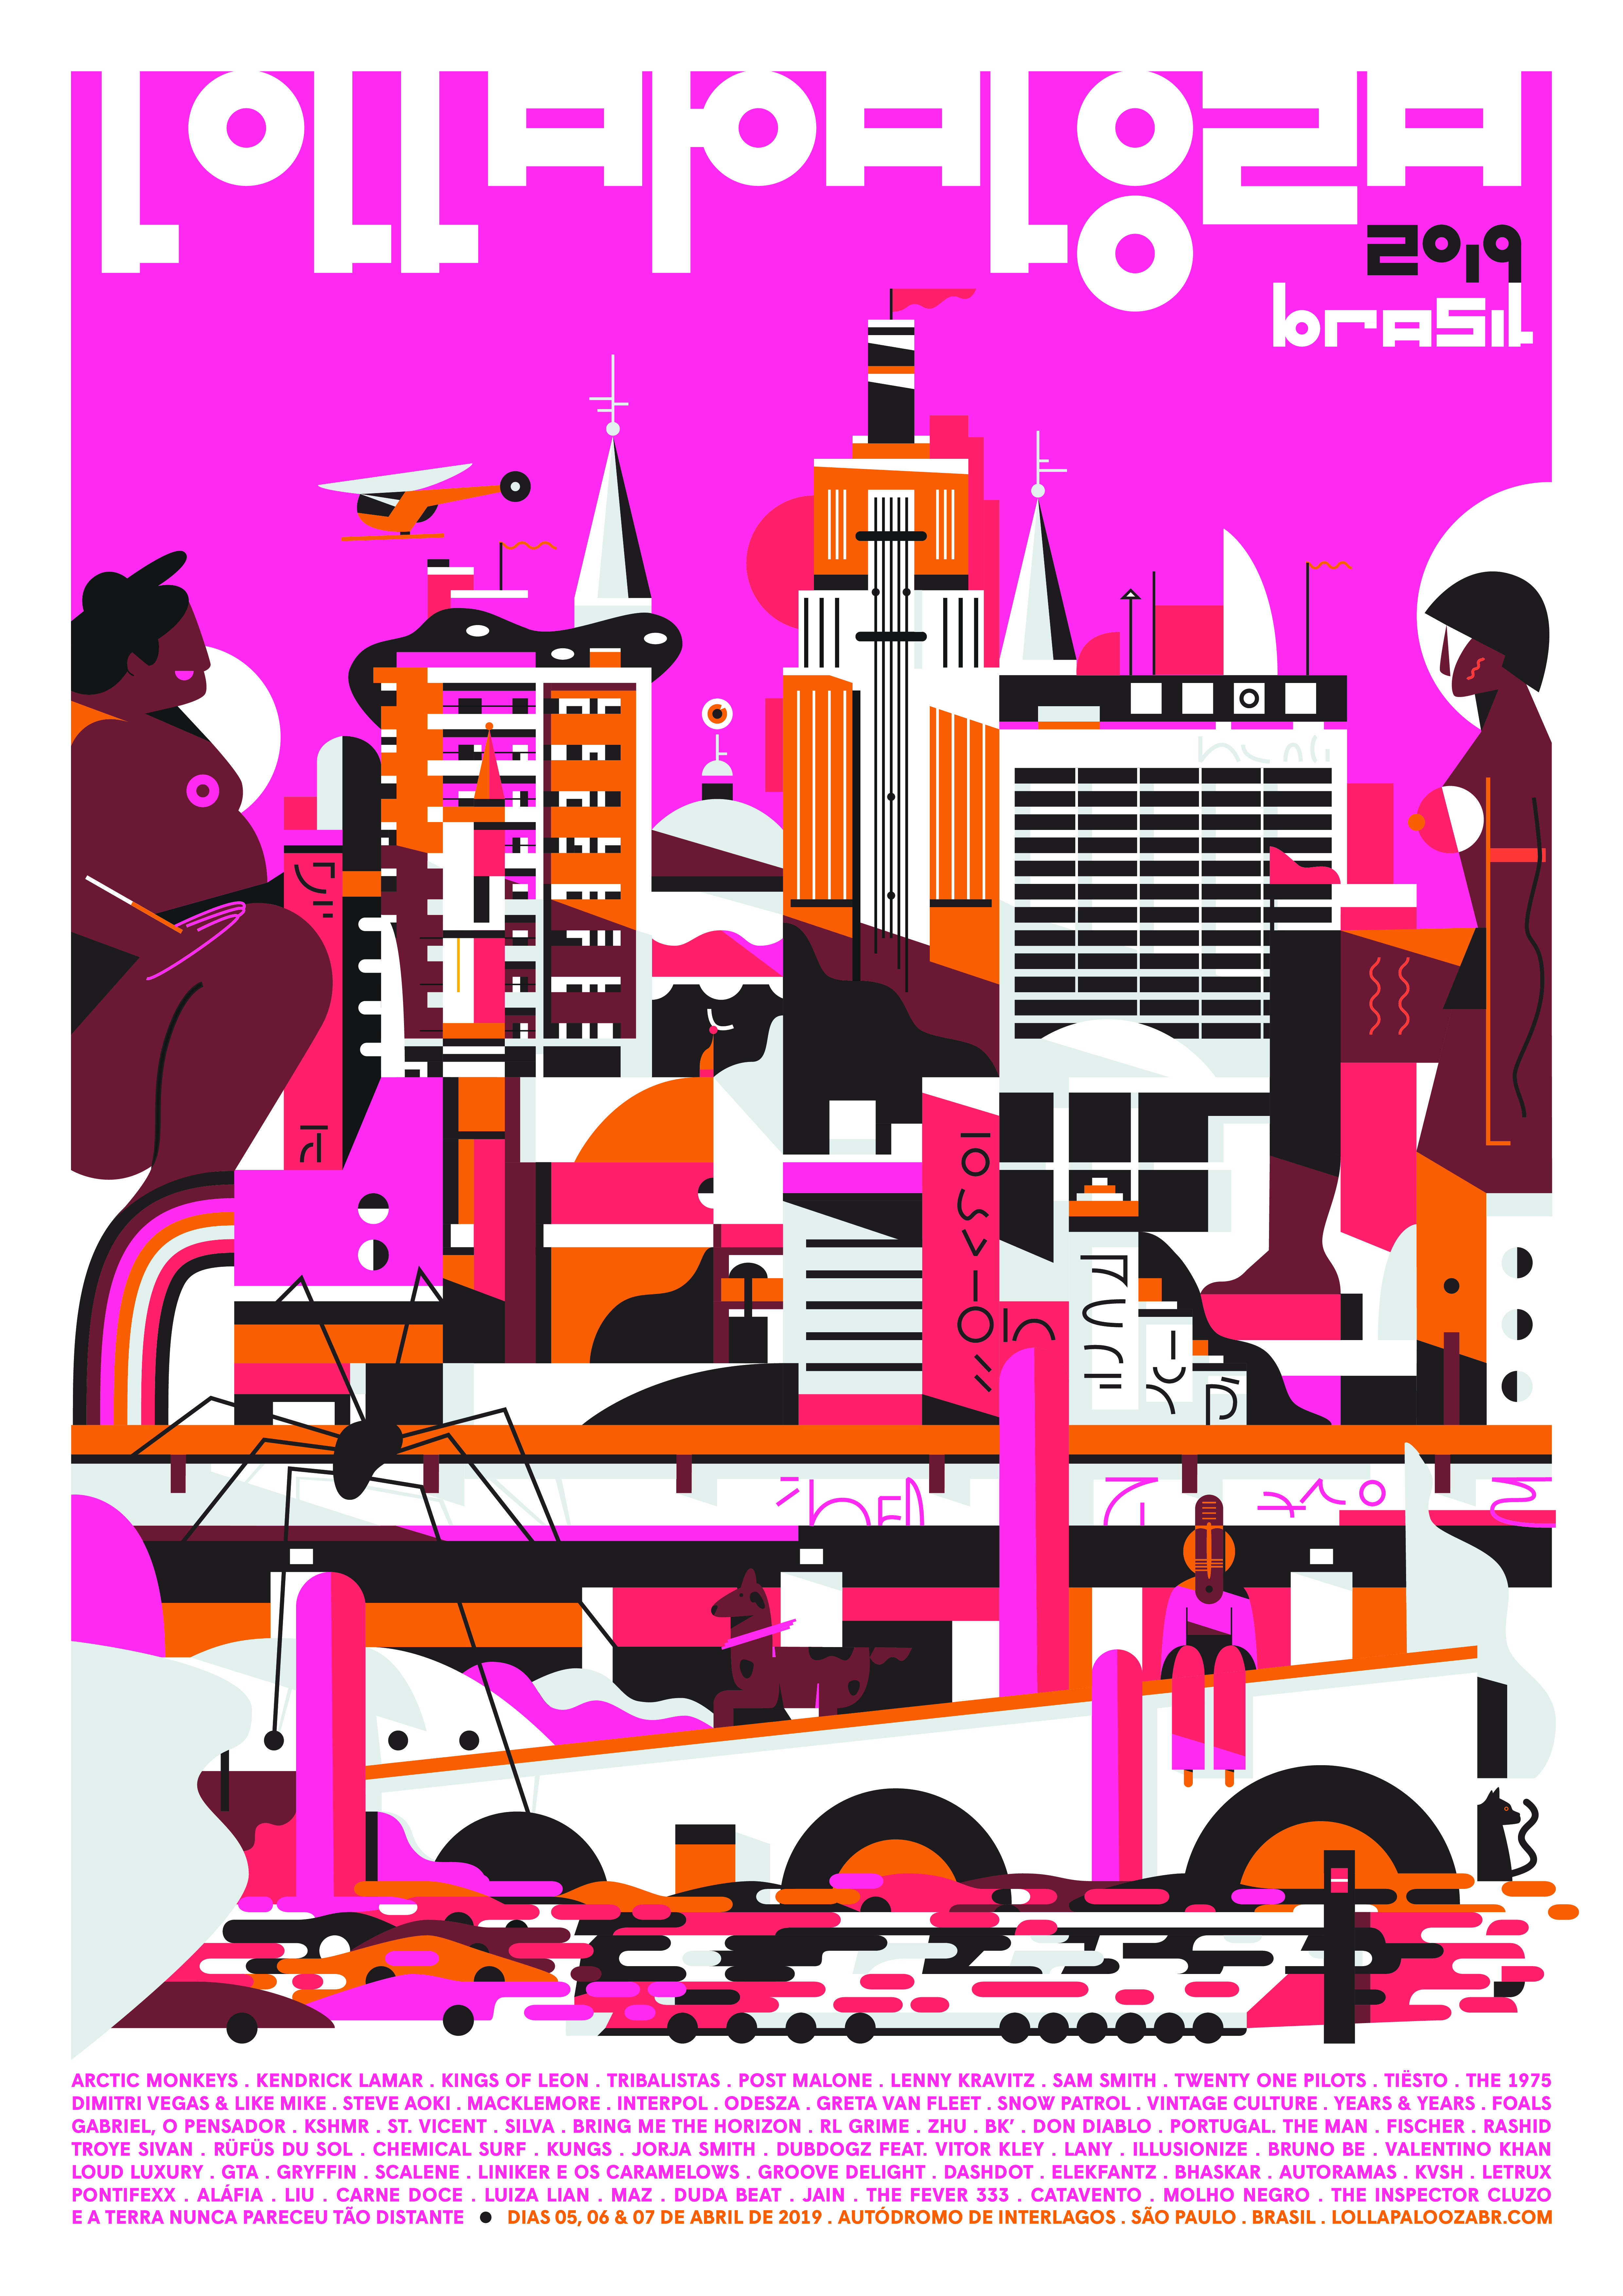 Cartaz do Lollapalooza 2019. Ilustração de Fabrizio Lenci